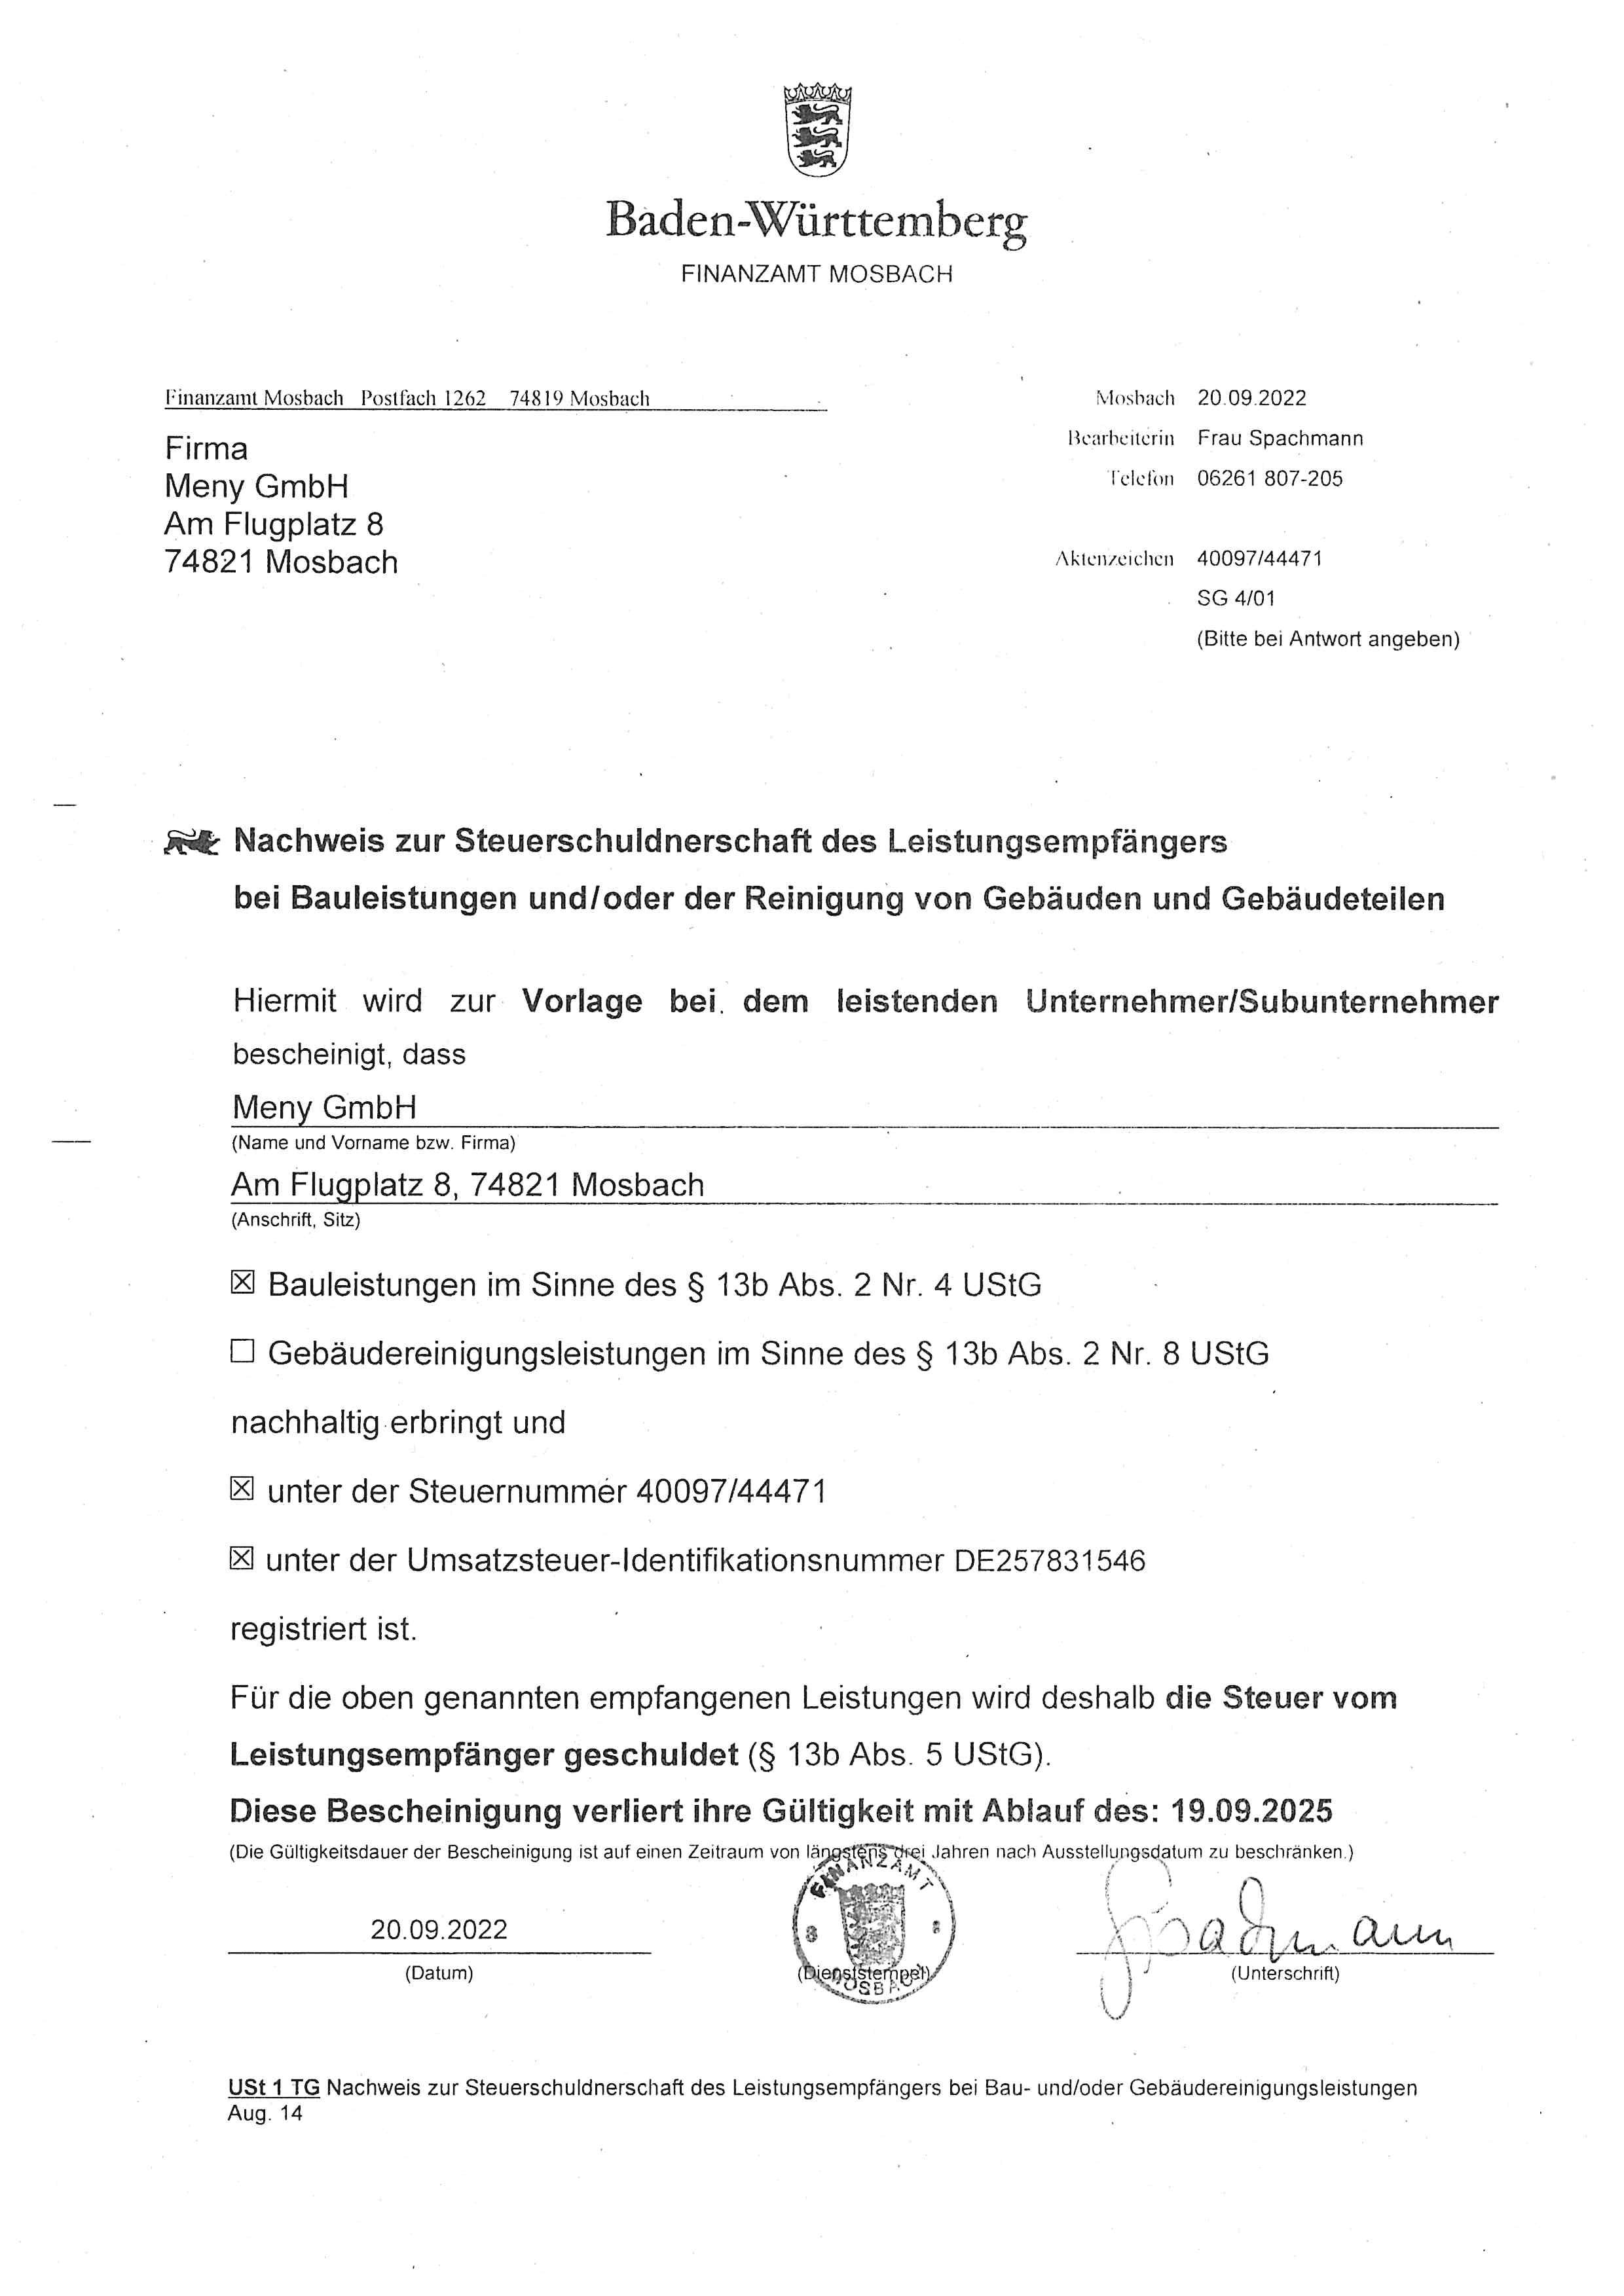 MENY GmbH - Nachweis der Steuerschuldnerschaft bis 09-2025